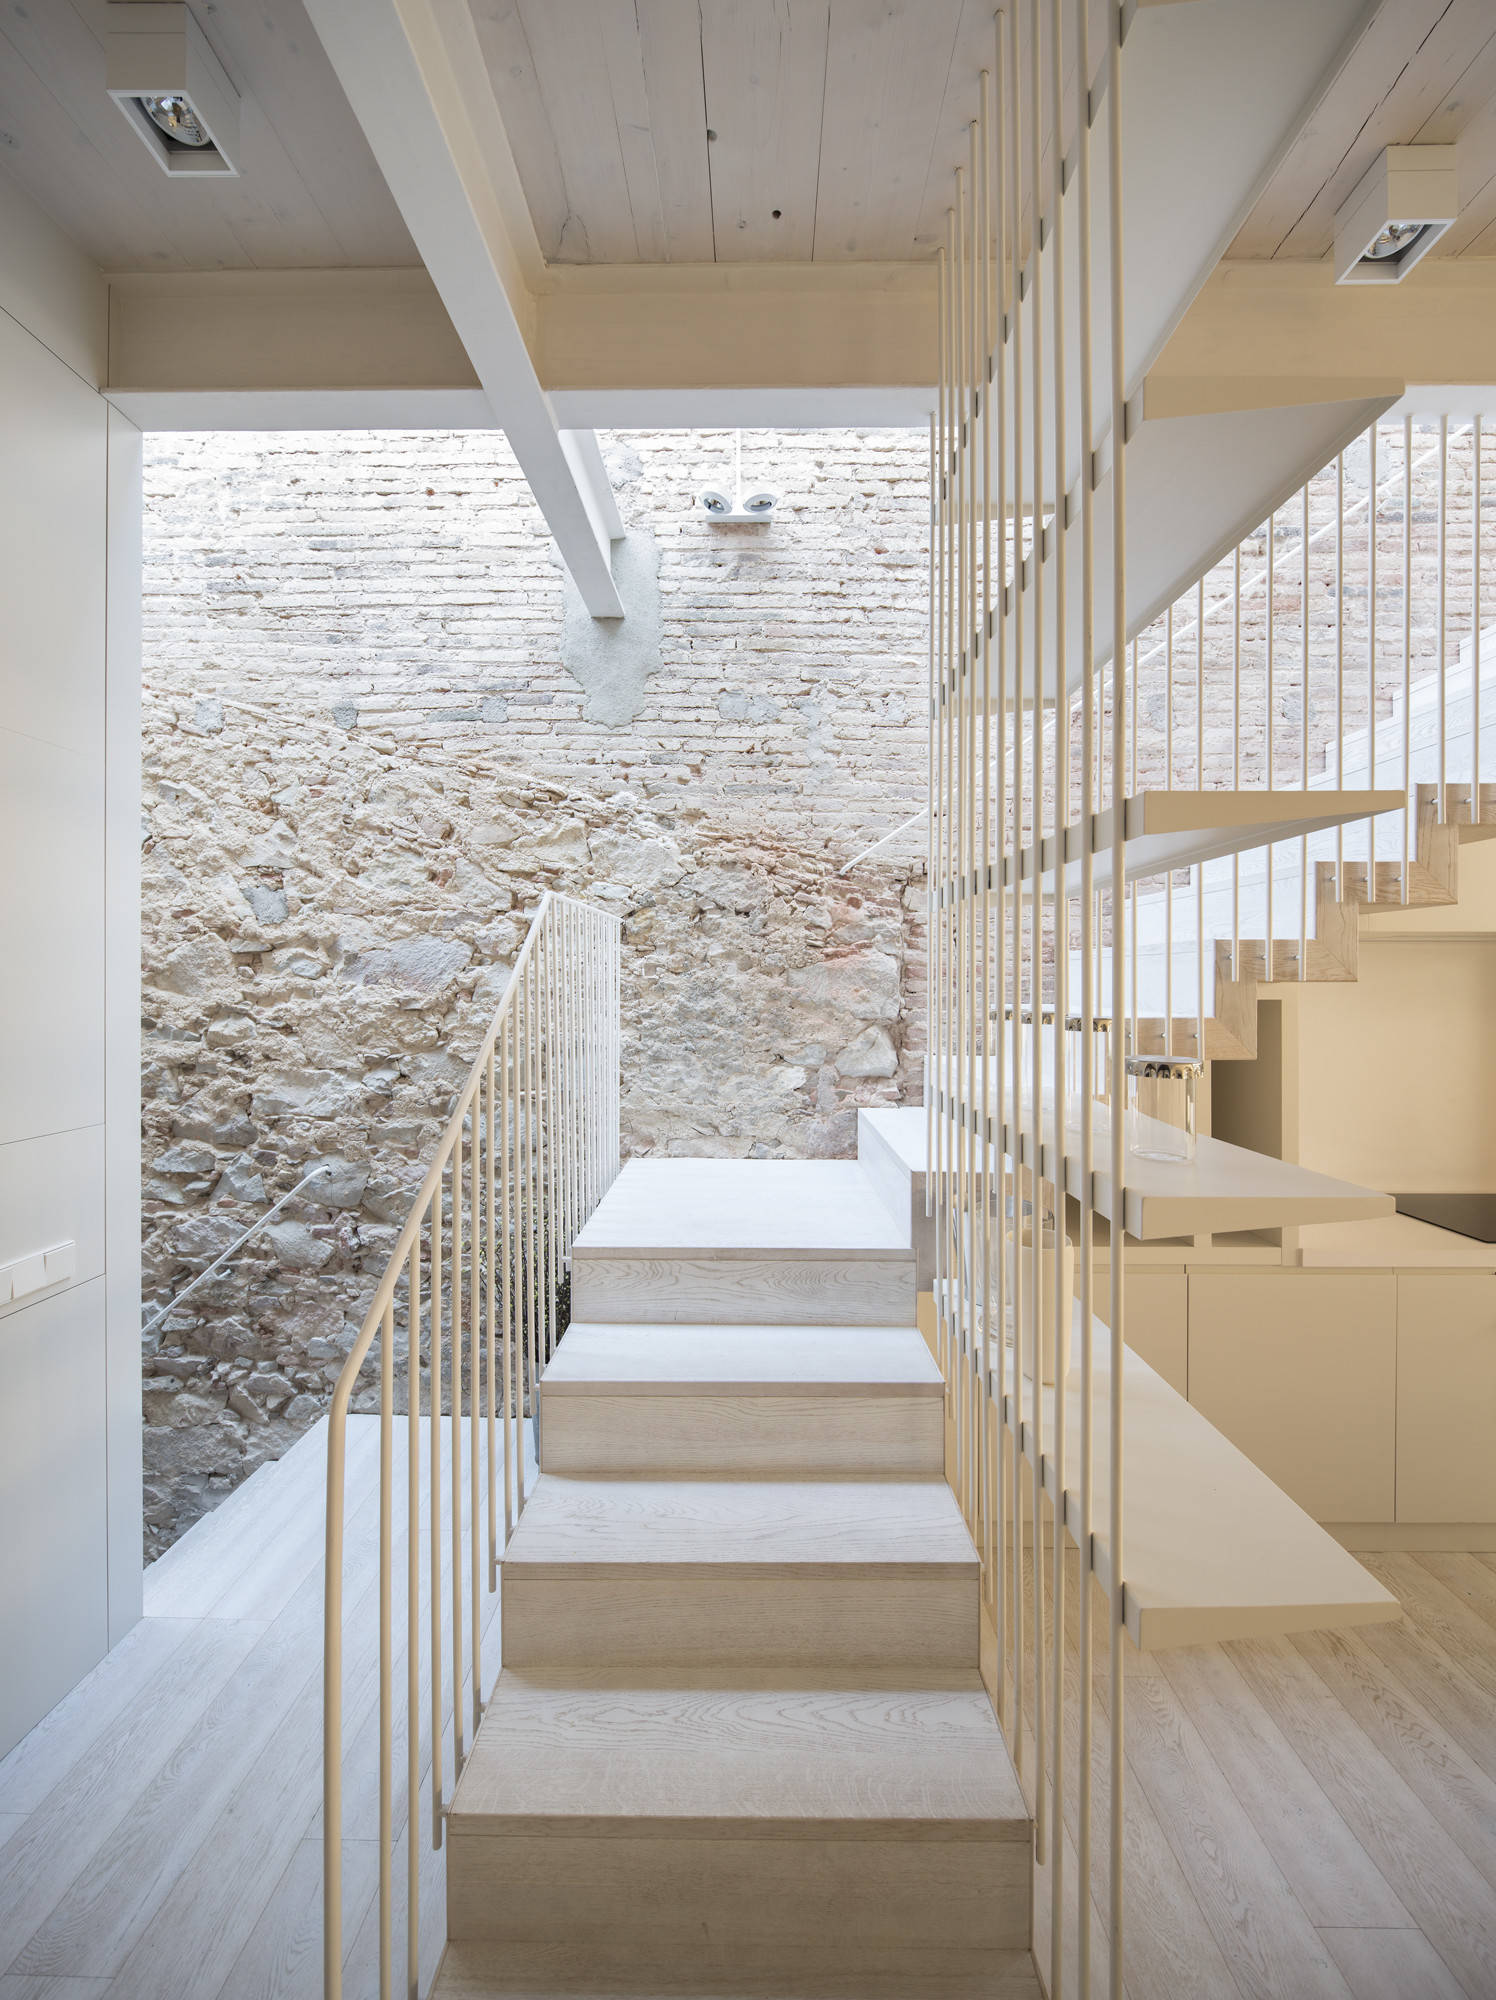 Barandillas para escaleras interiores – Ideas decorar diseños residenciales